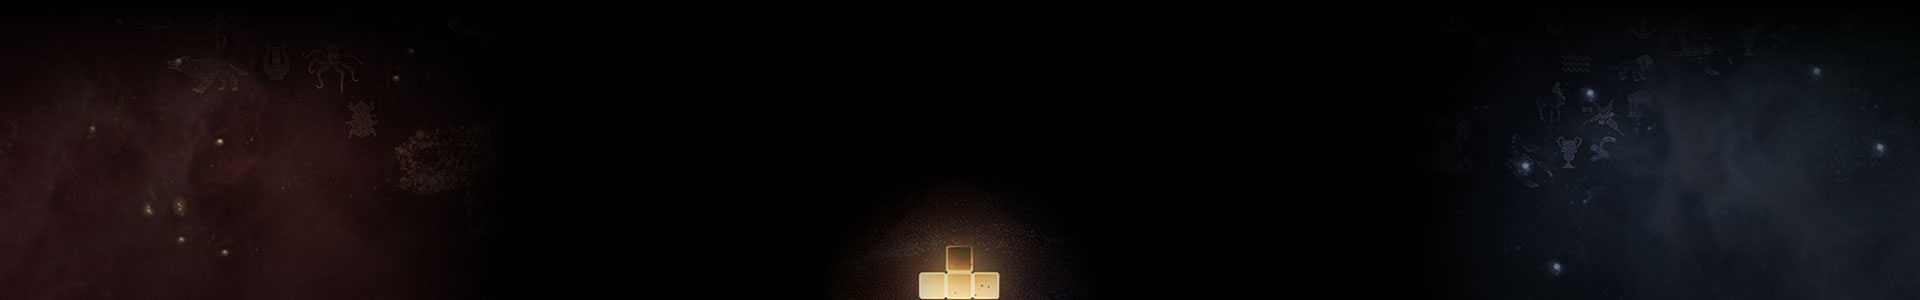 Une pièce lumineuse de Tetris trône parmi les étoiles.